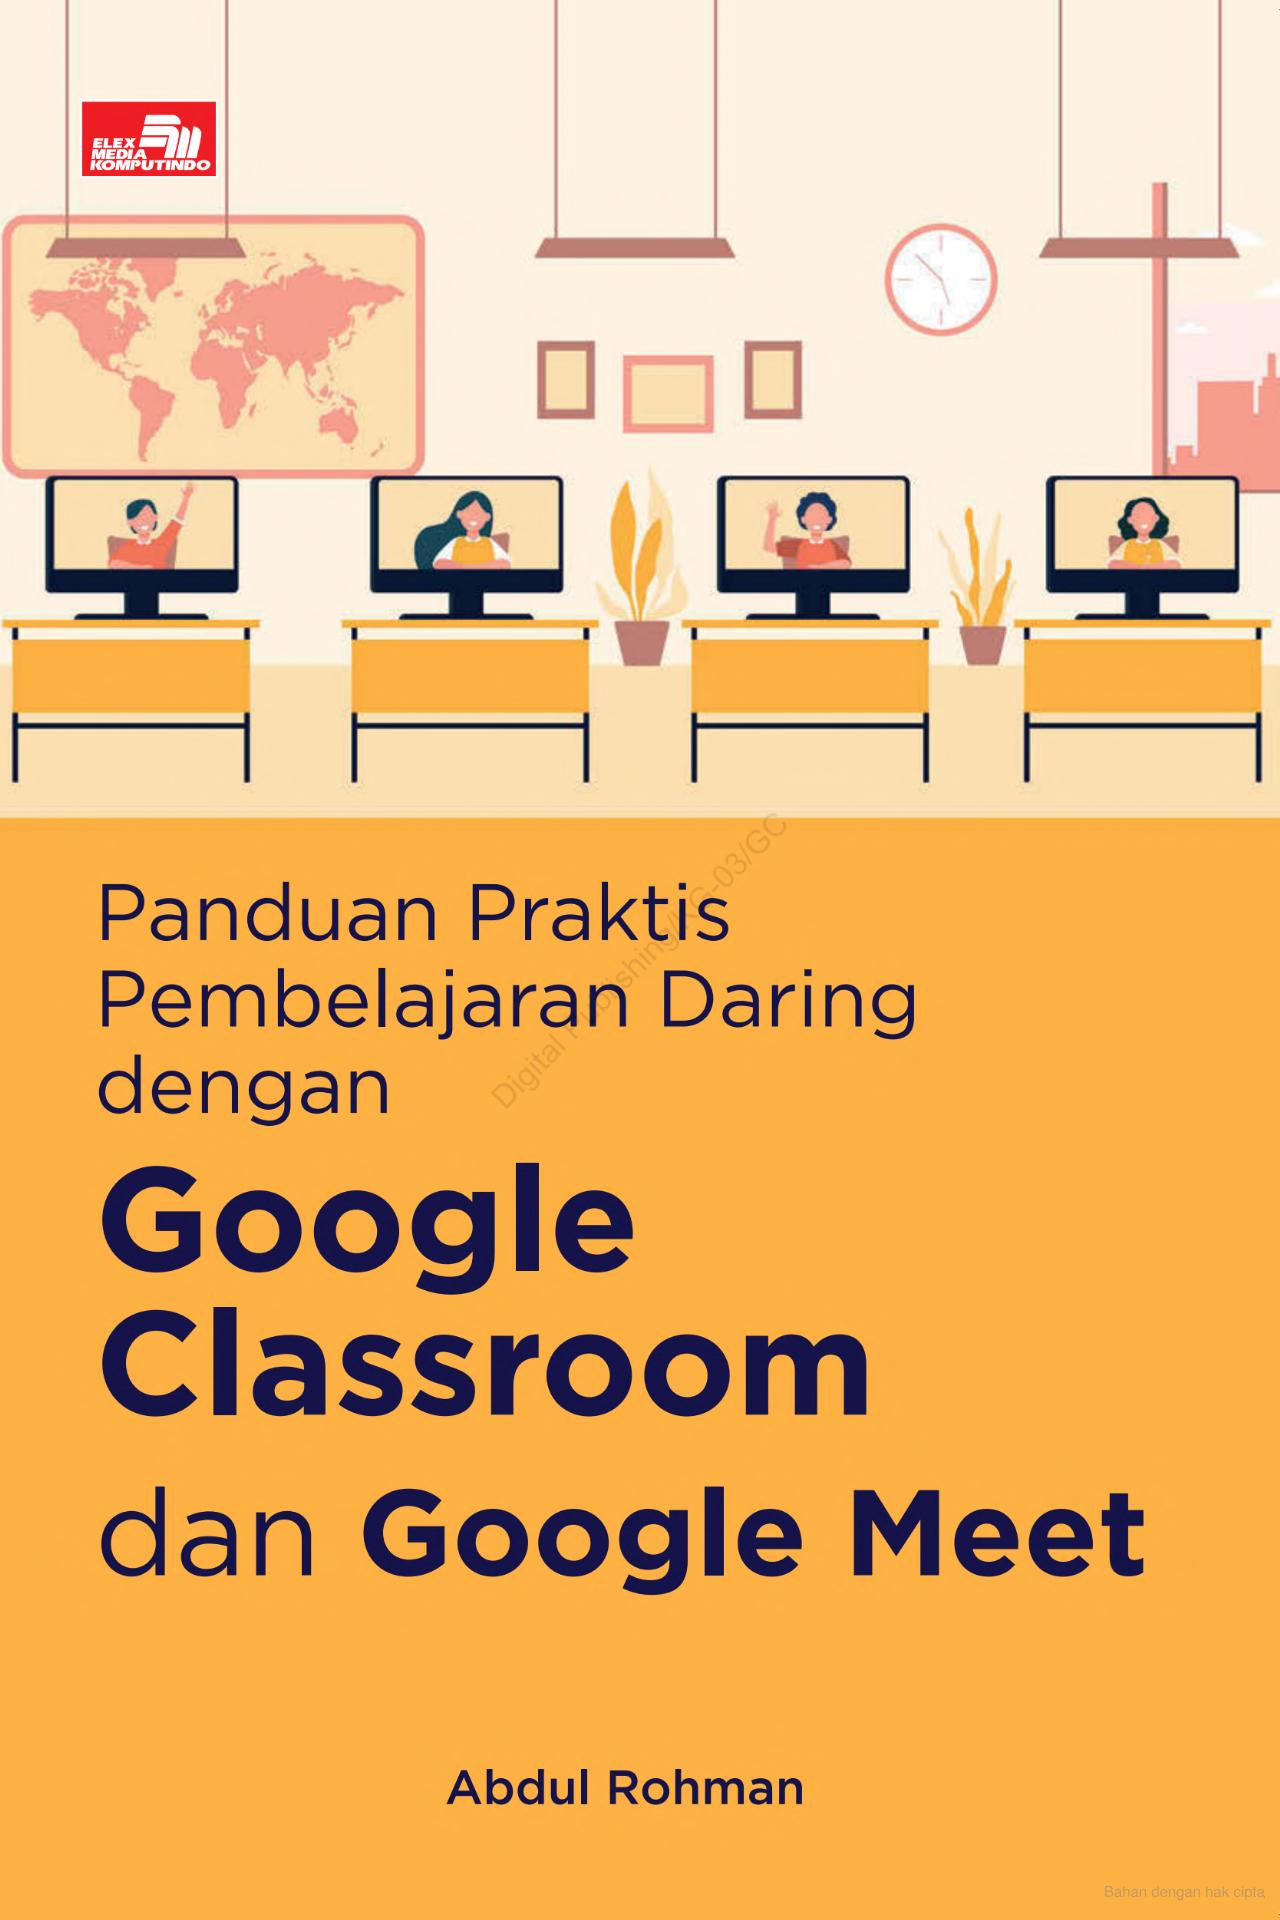 Panduan praktis pembelajaran daring dengan google clasroom dan google meet